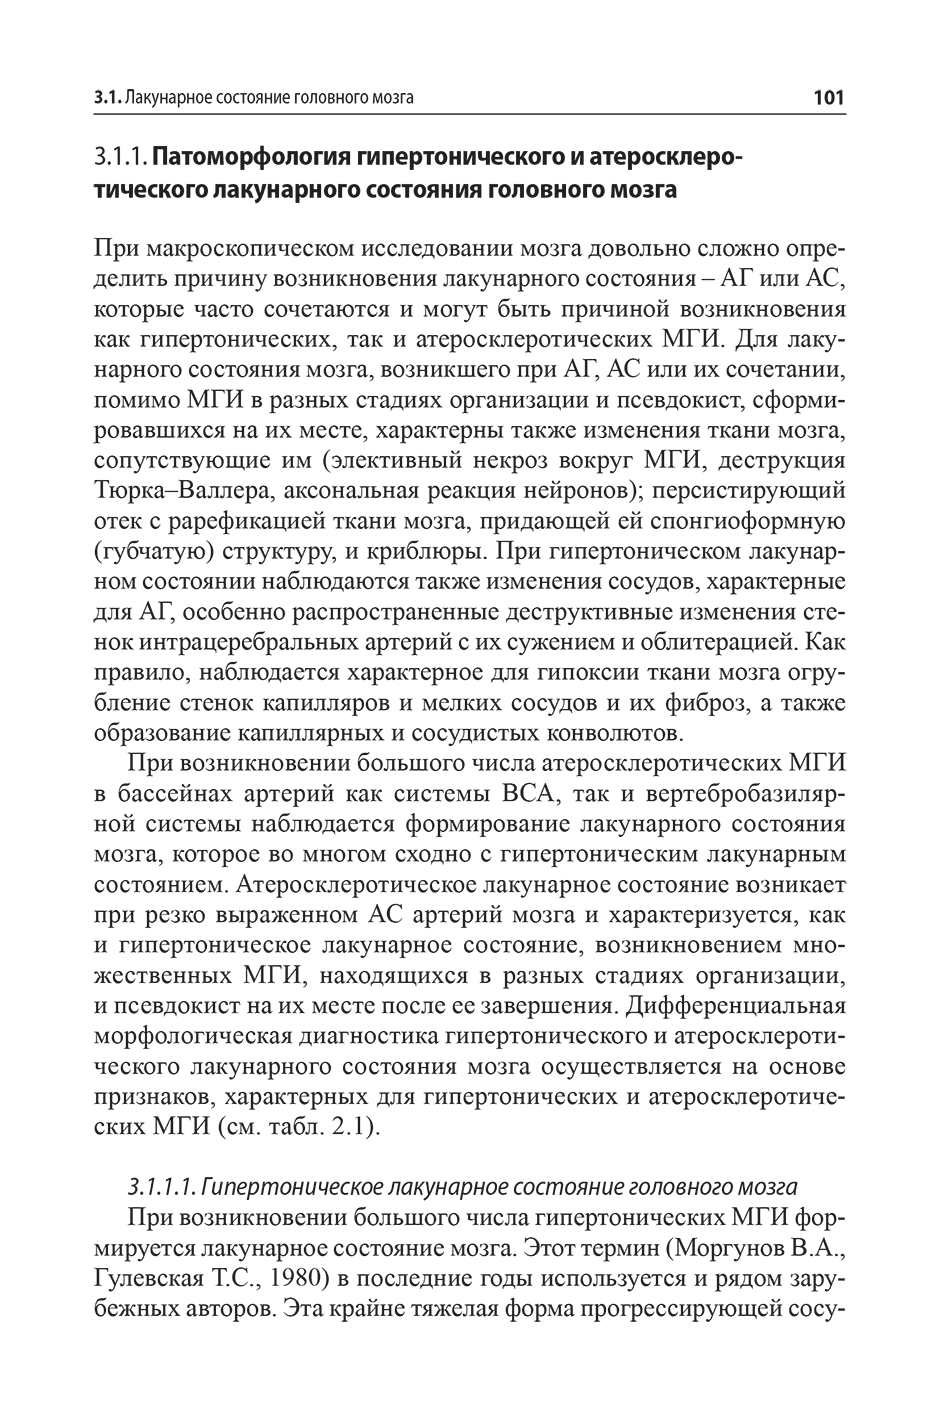 Пример страницы из книги "Малые инфаркты головного мозга" - М. Ю. Максимова, Т. С. Гулевская